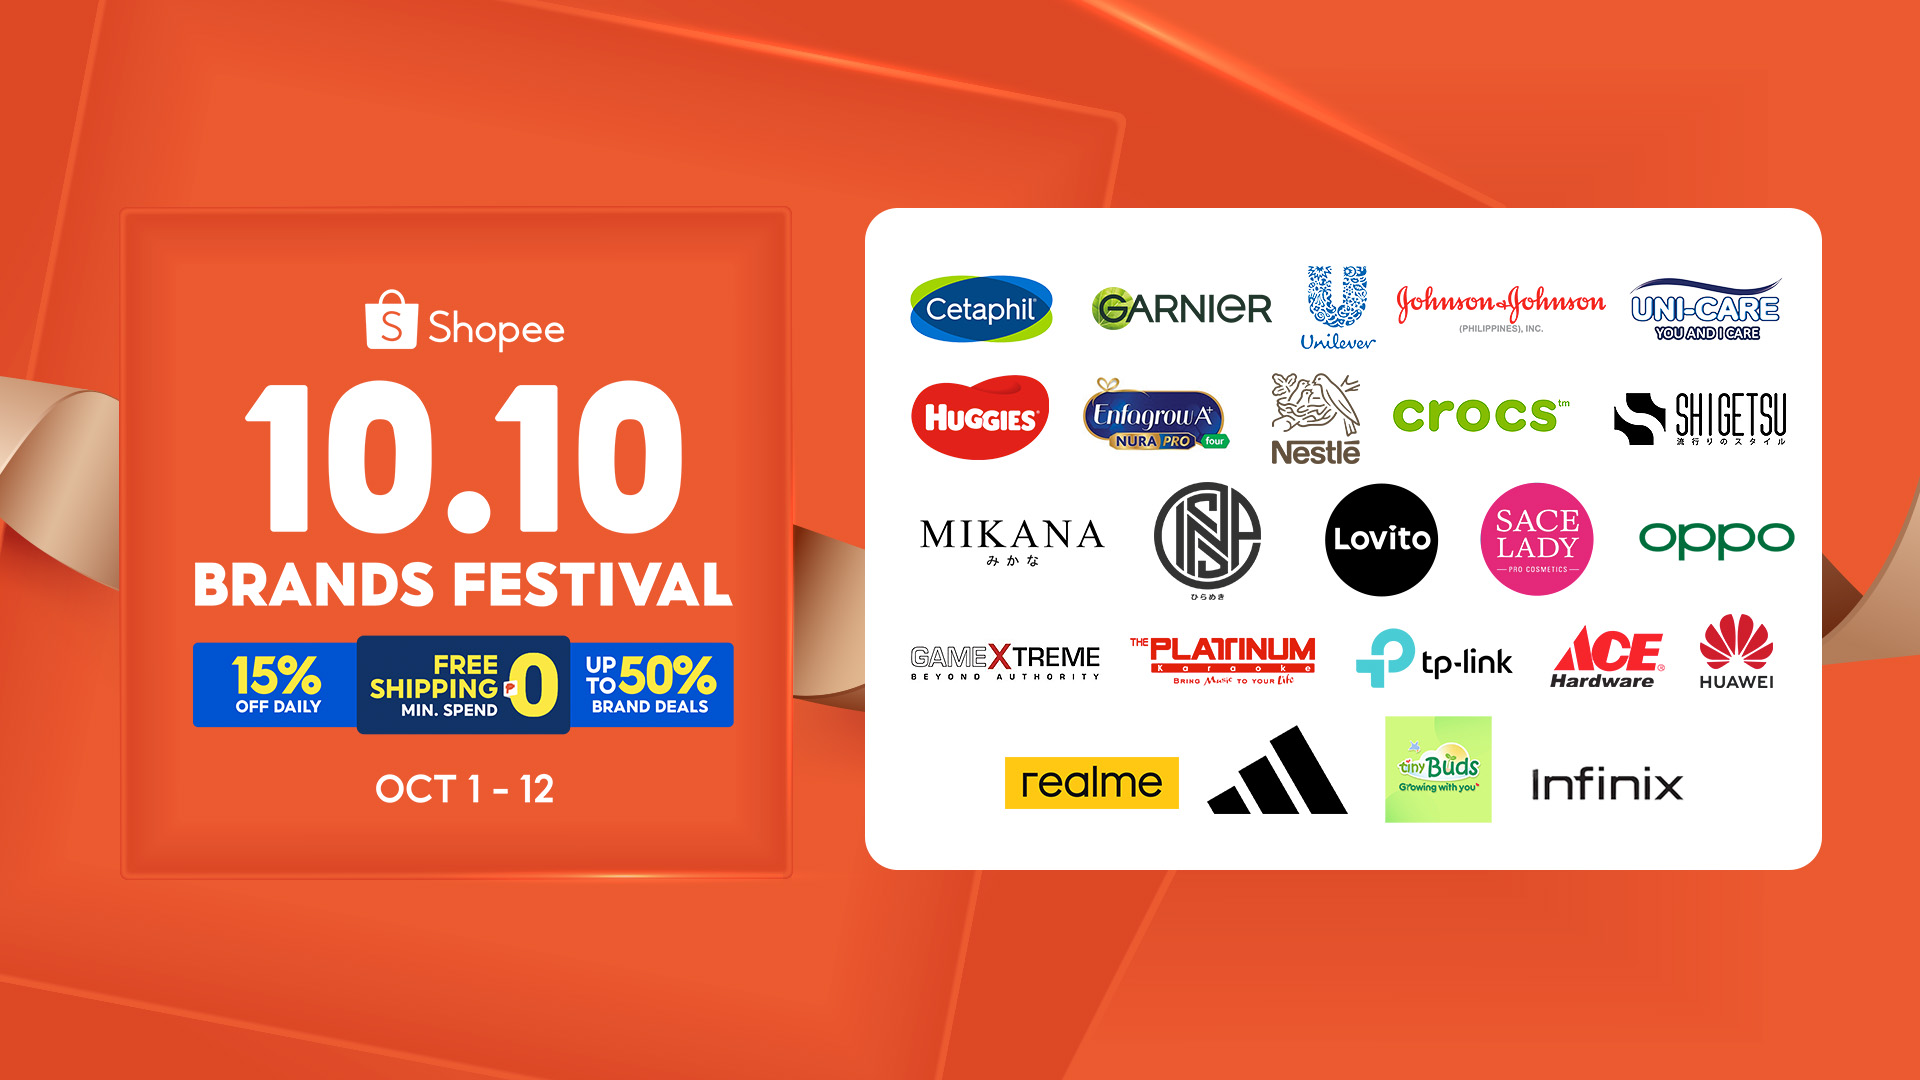 Shopee 10.10 Brands Festival